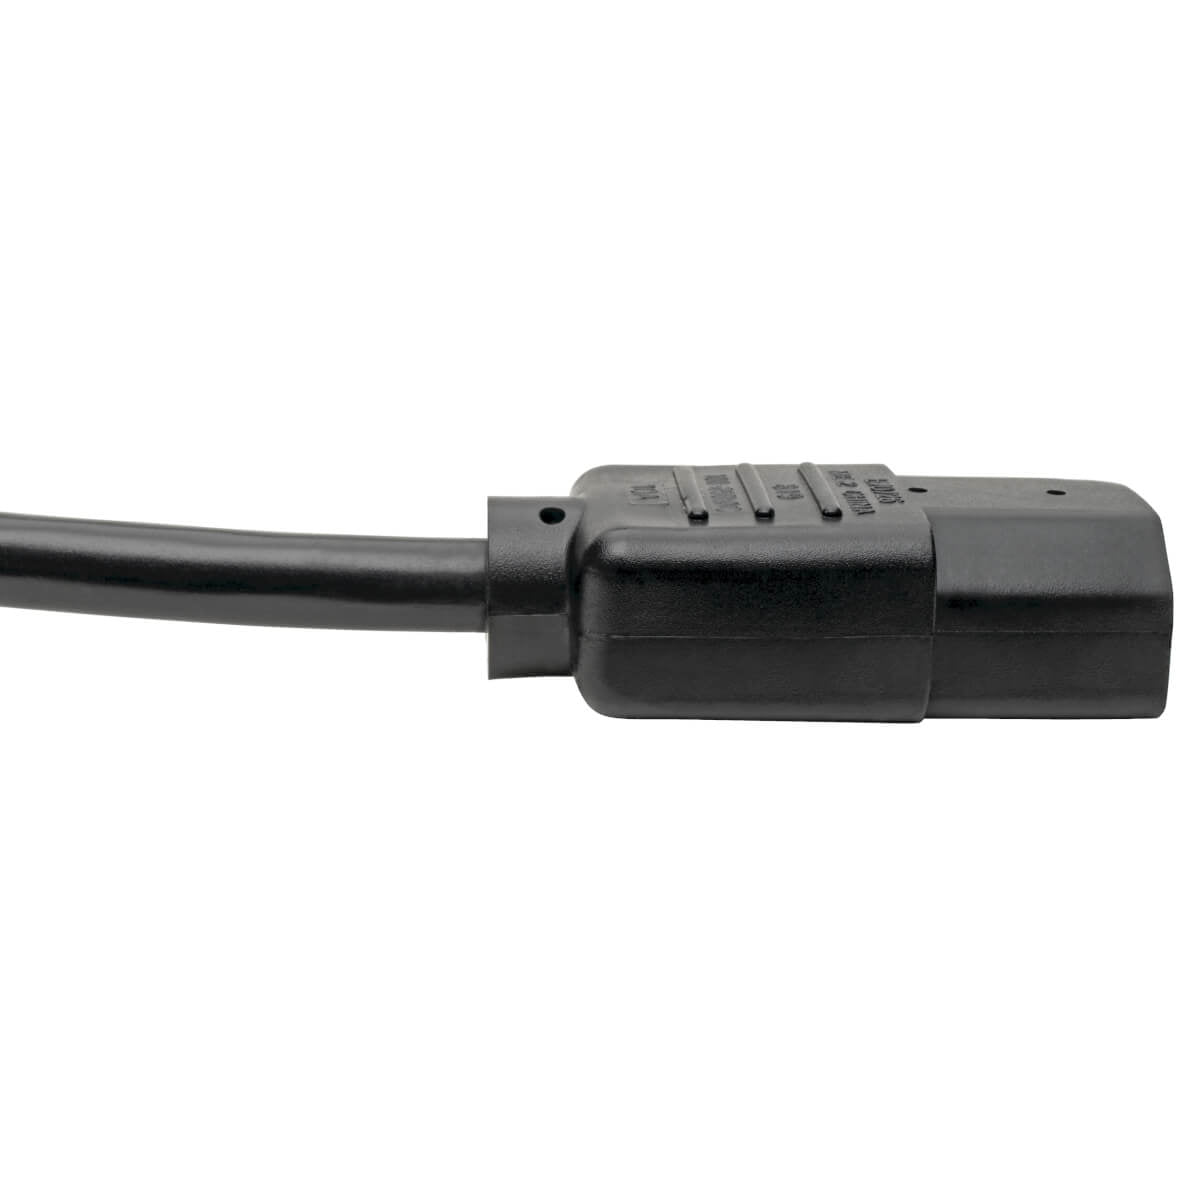 Cable De Alimentación Tripp-Lite P004-006 183 M Negro